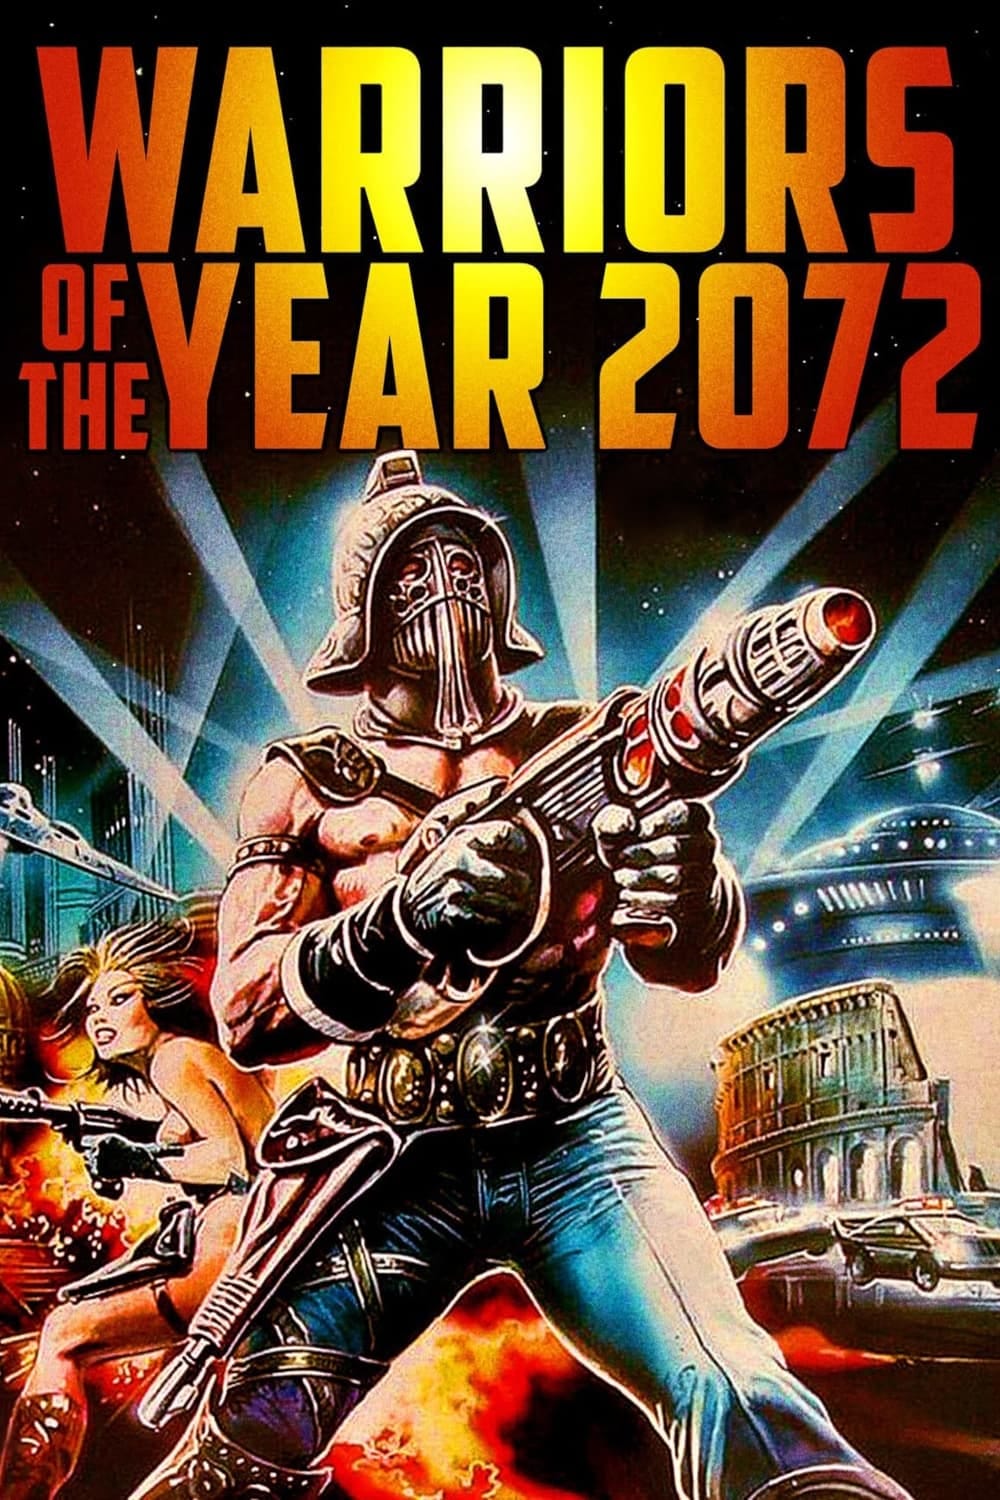 Watch I guerrieri dell'anno 2072 (1984) Full Movie Free Online - Plex